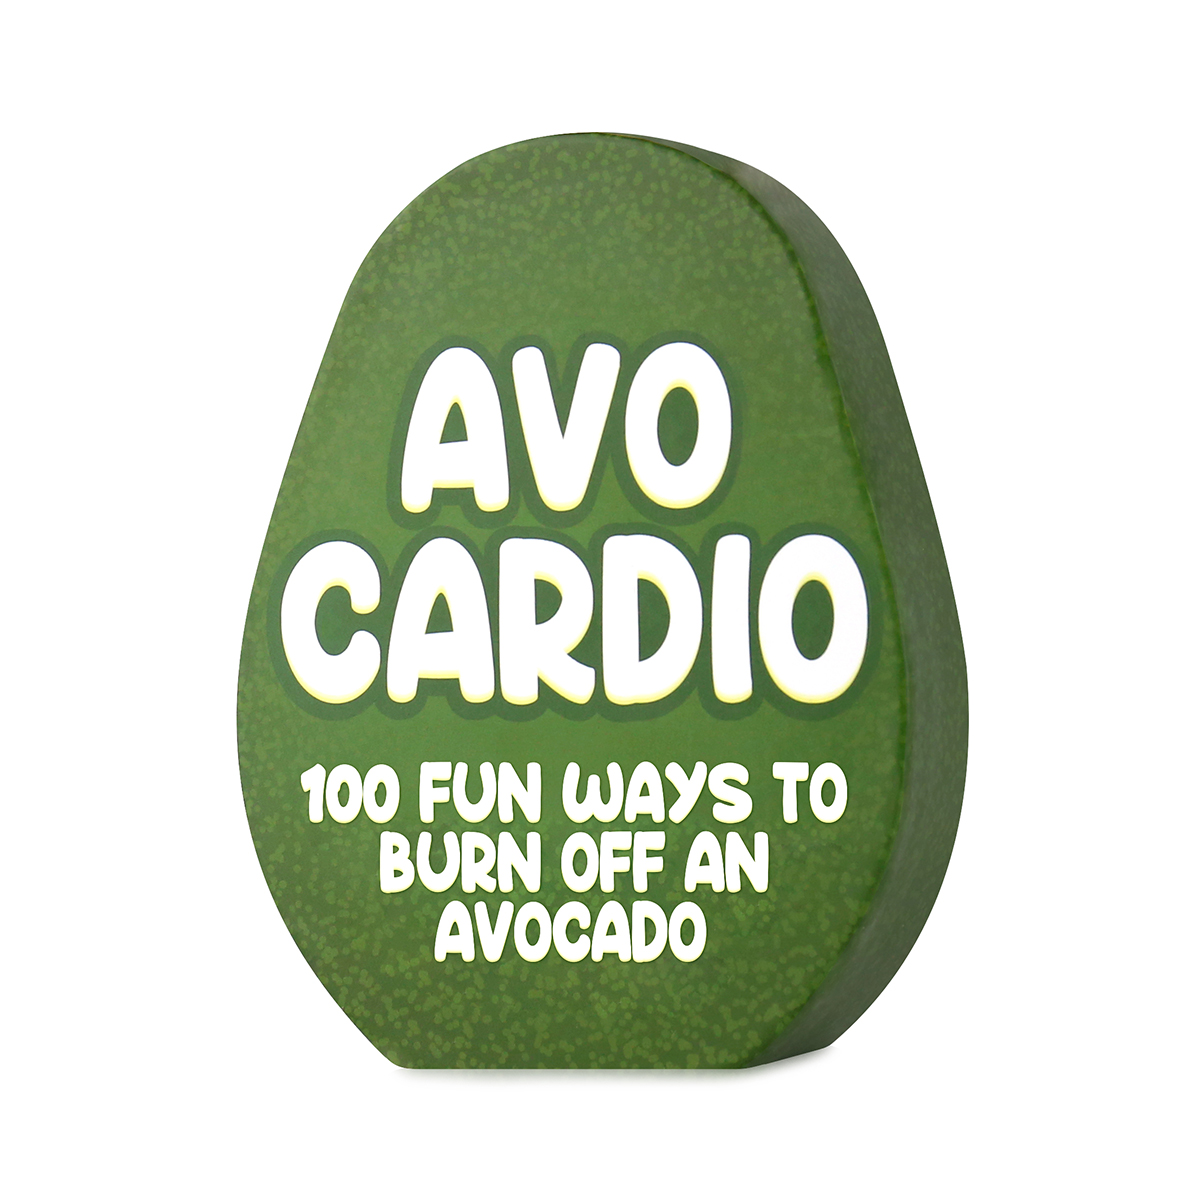 Avocardio 100 Fitness Ideeën Voor Een Avocado